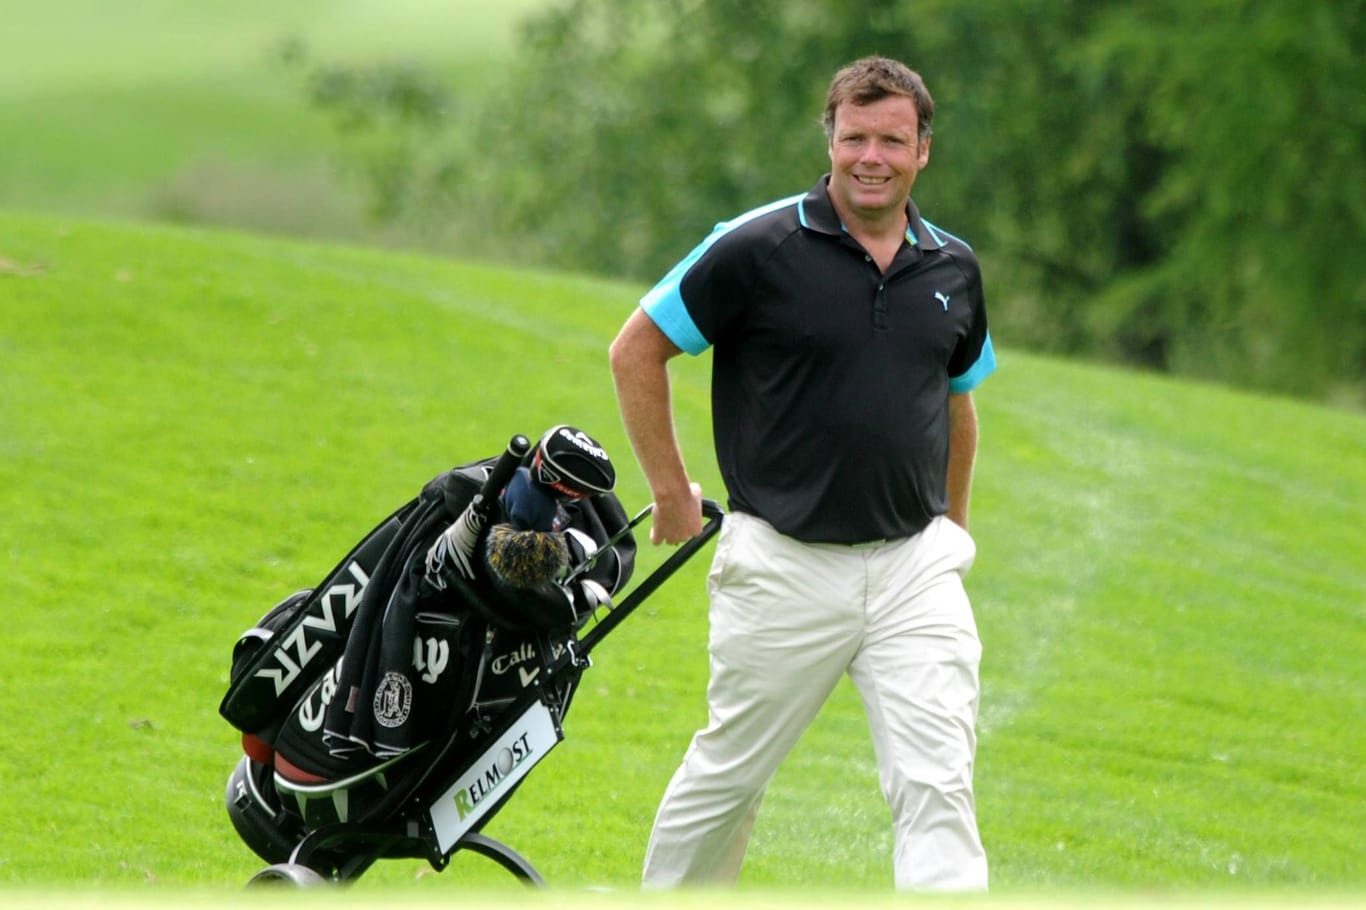 Golfspieler McGuirk als Teilnehmer der European Challenge Tour in Tschechien, 2013.